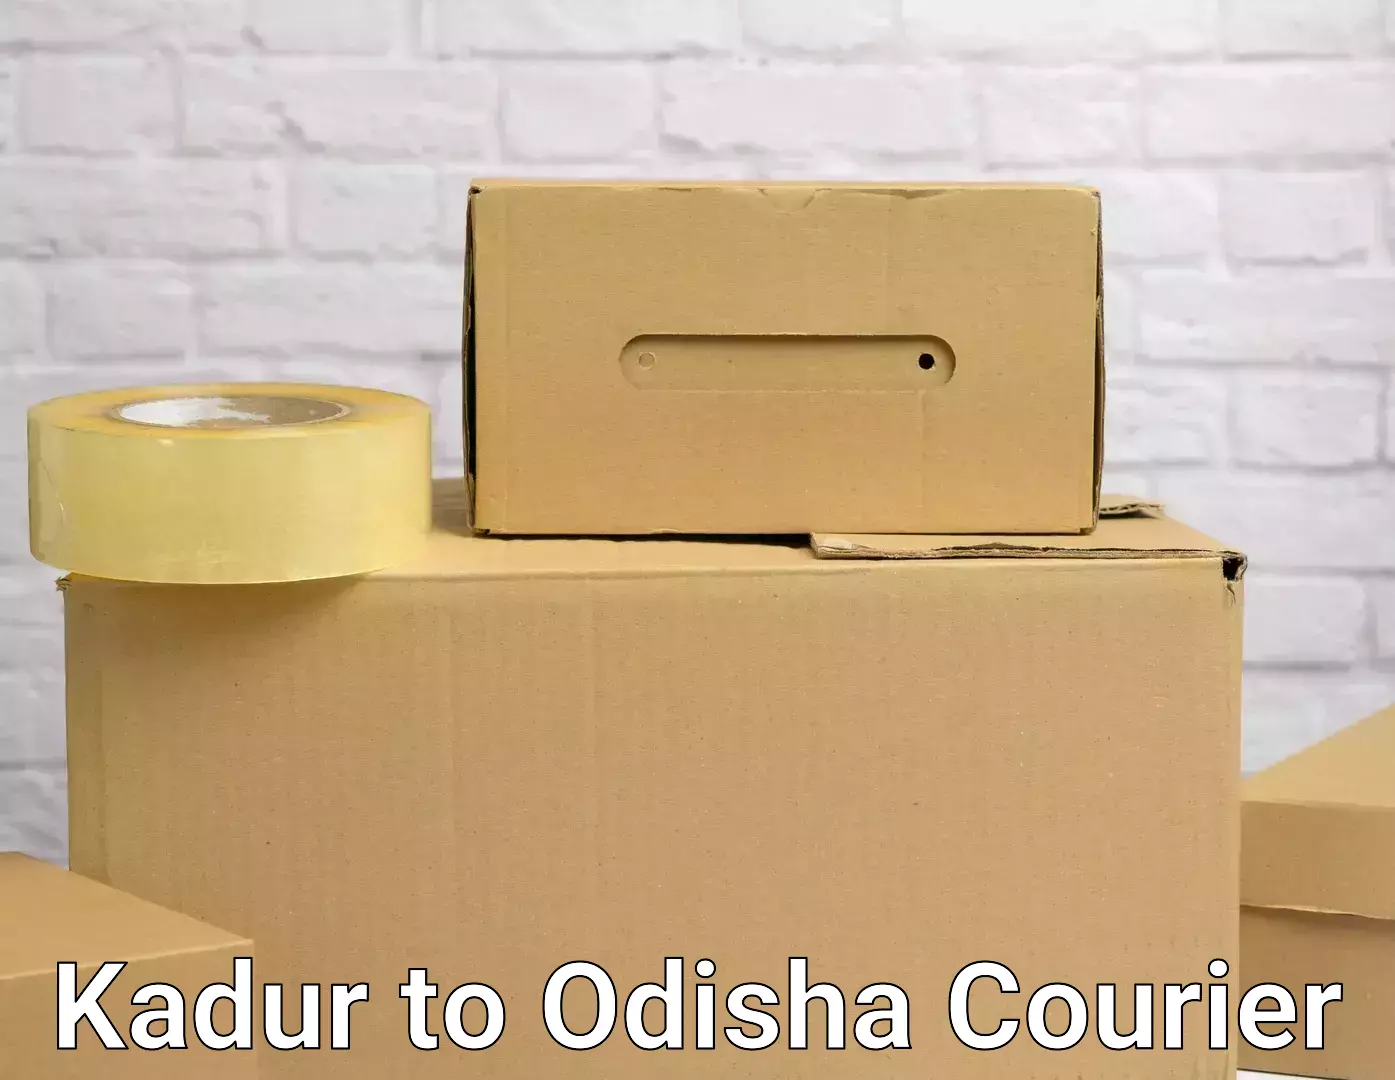 Furniture transport company Kadur to Odisha